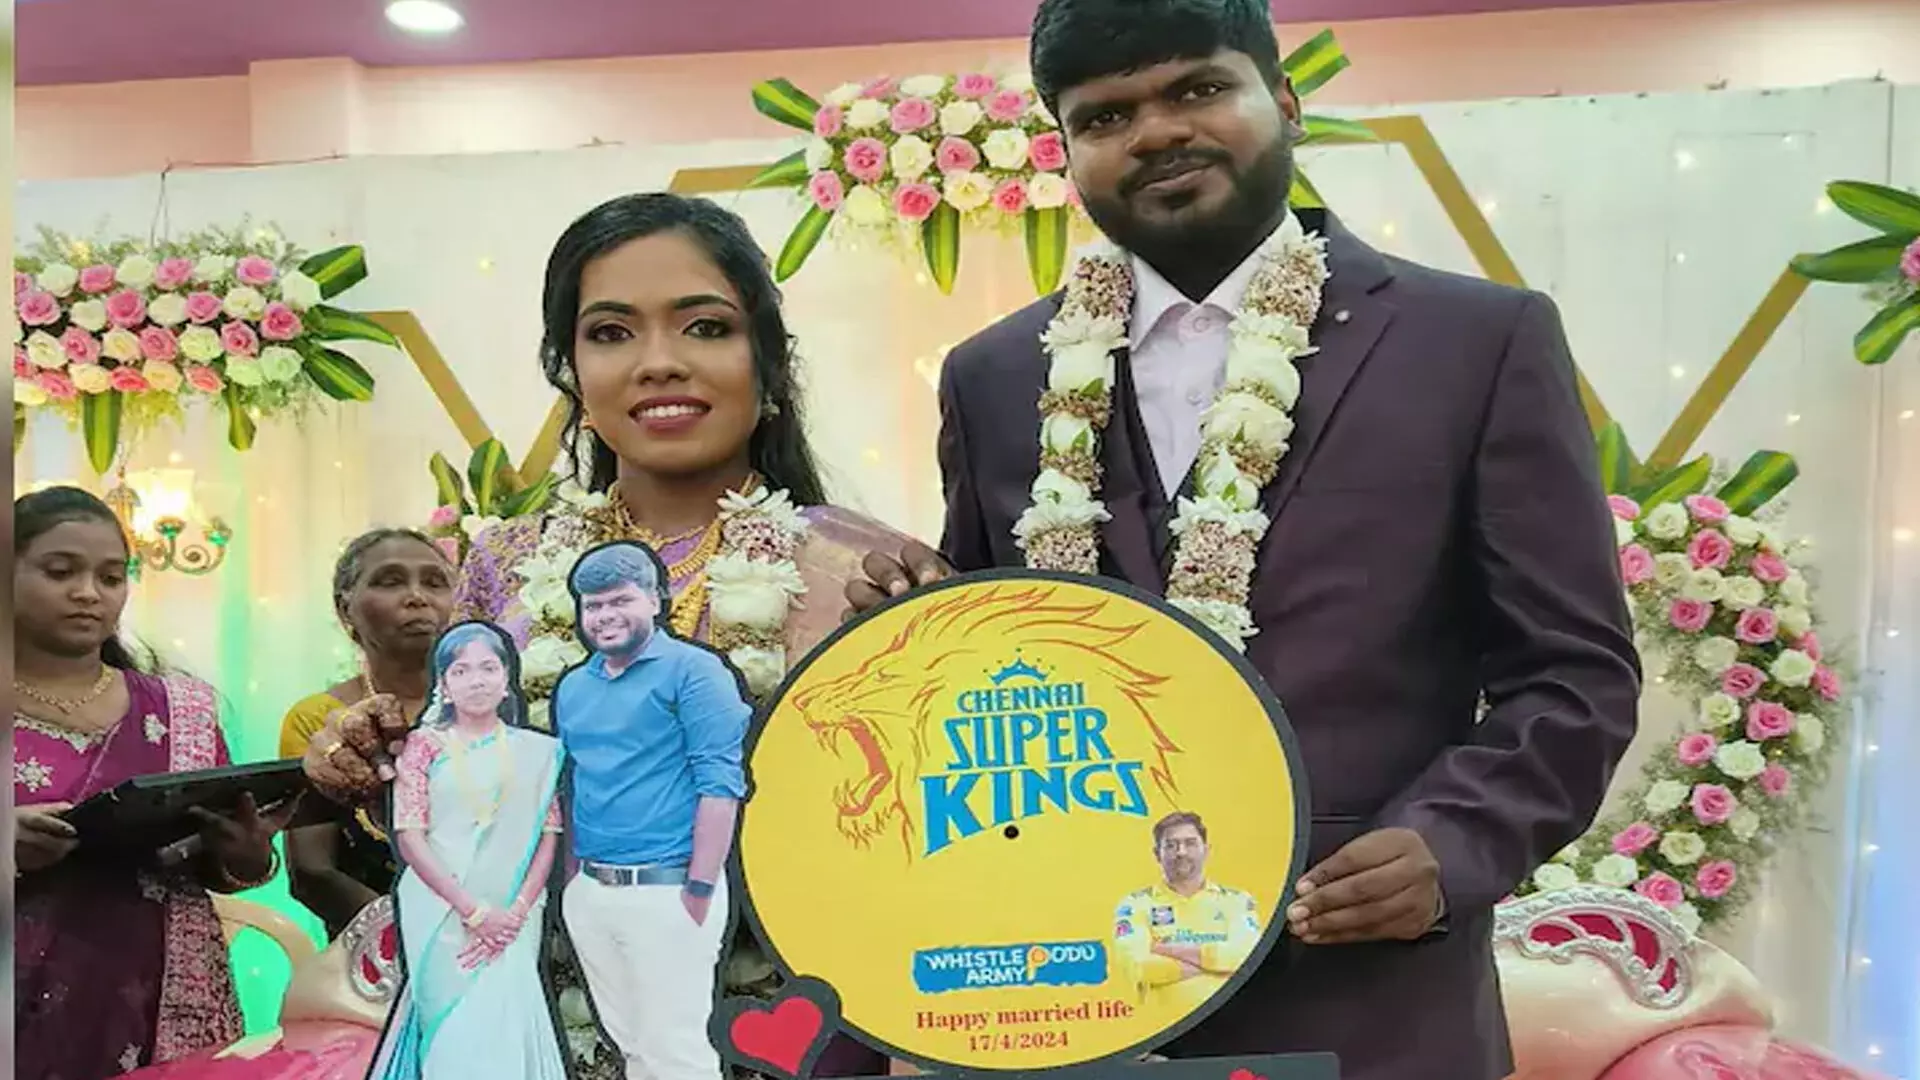 तमिलनाडु के जोड़े का आईपीएल-थीम वाला शादी का निमंत्रण इंटरनेट का मनोरंजन